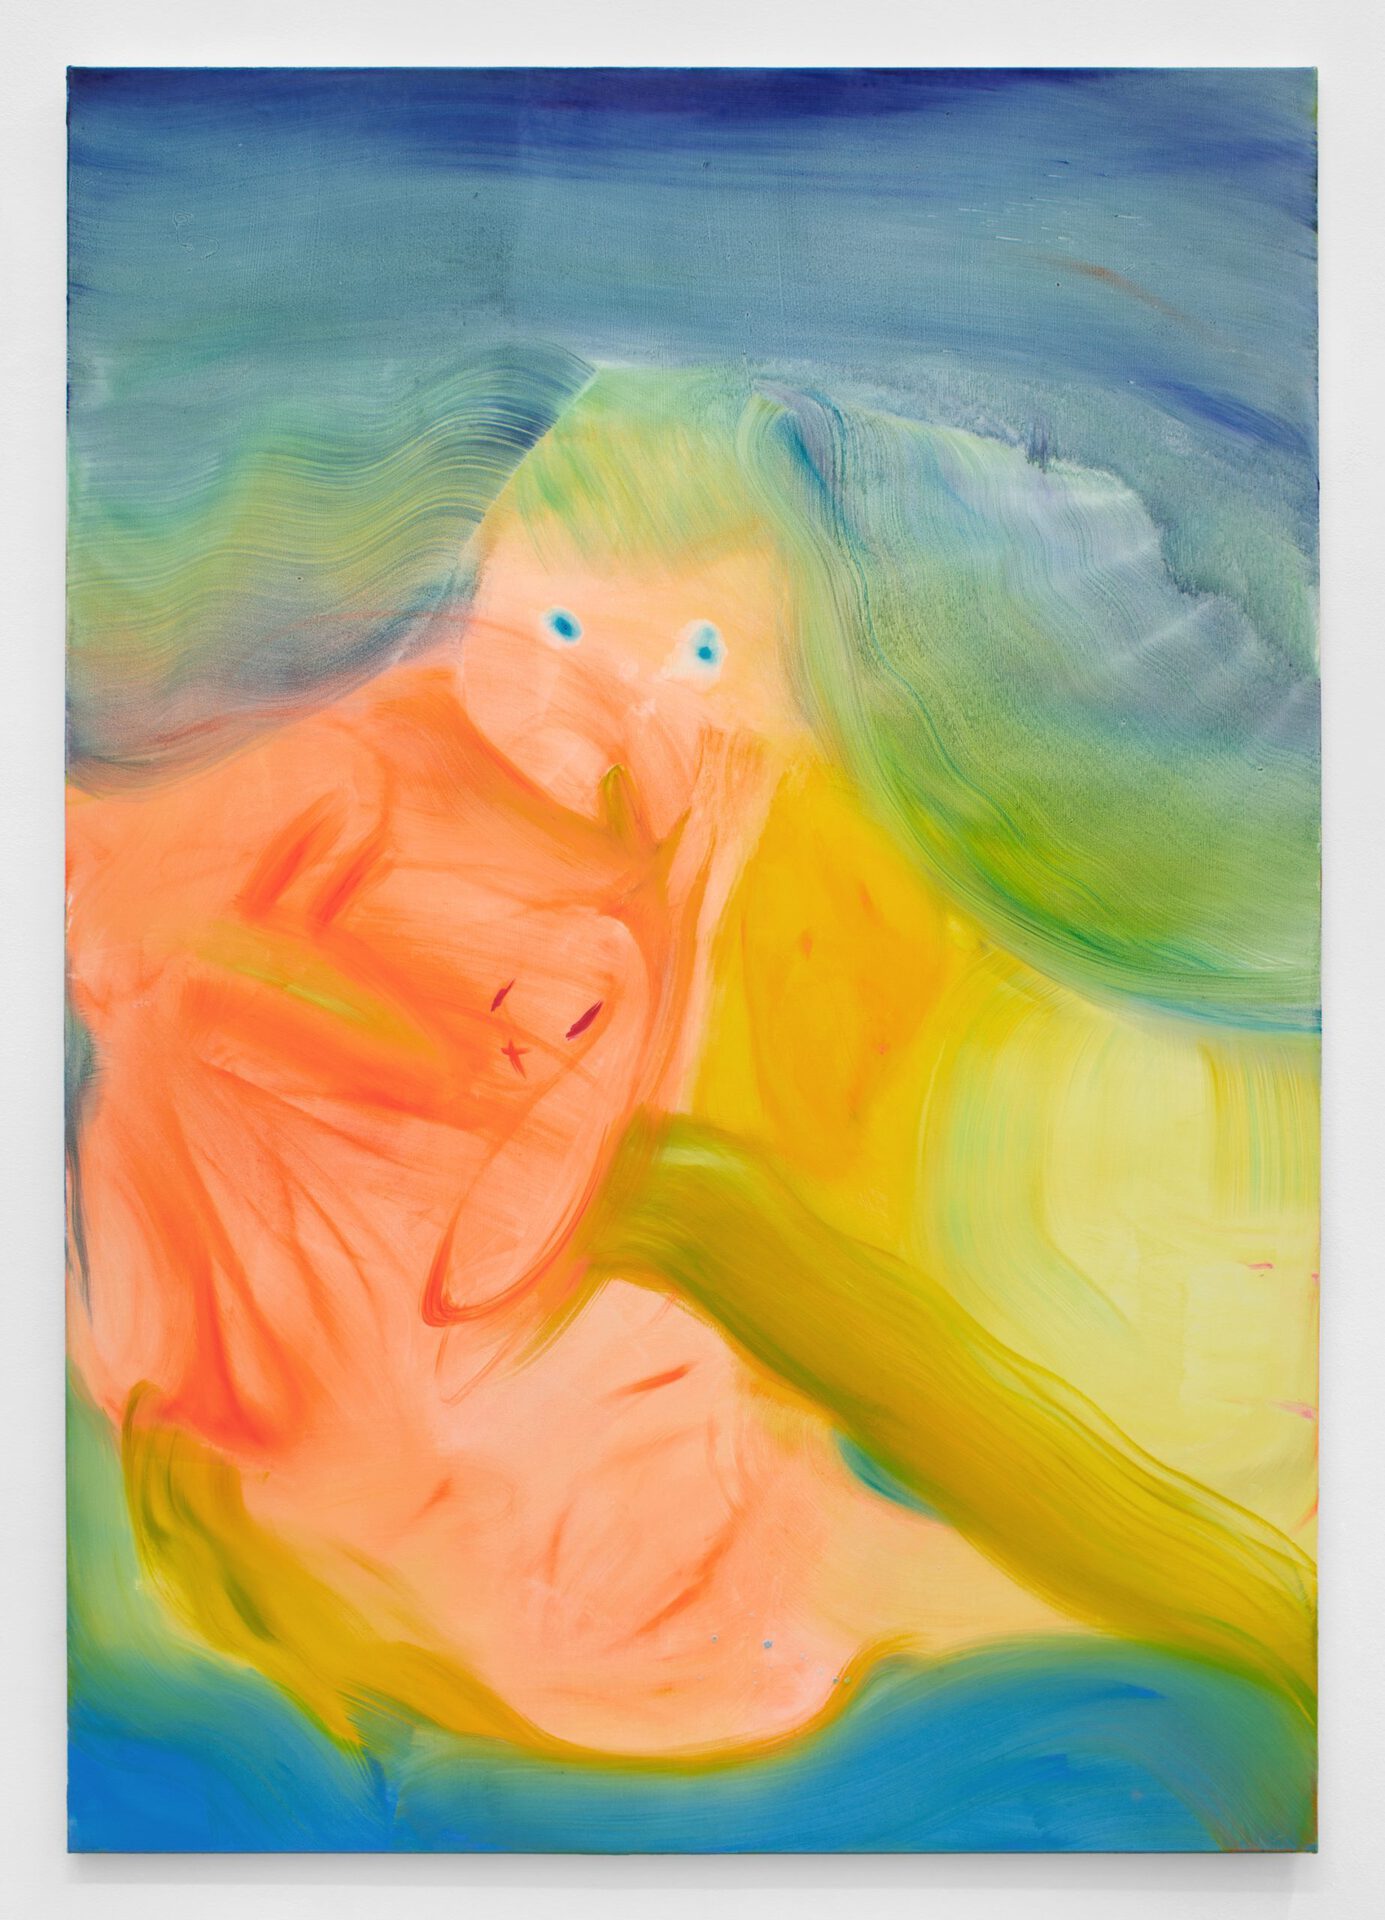 Aneta Kajzer, Floating Away, oil on canvas, 2021, 200 x 140 cm